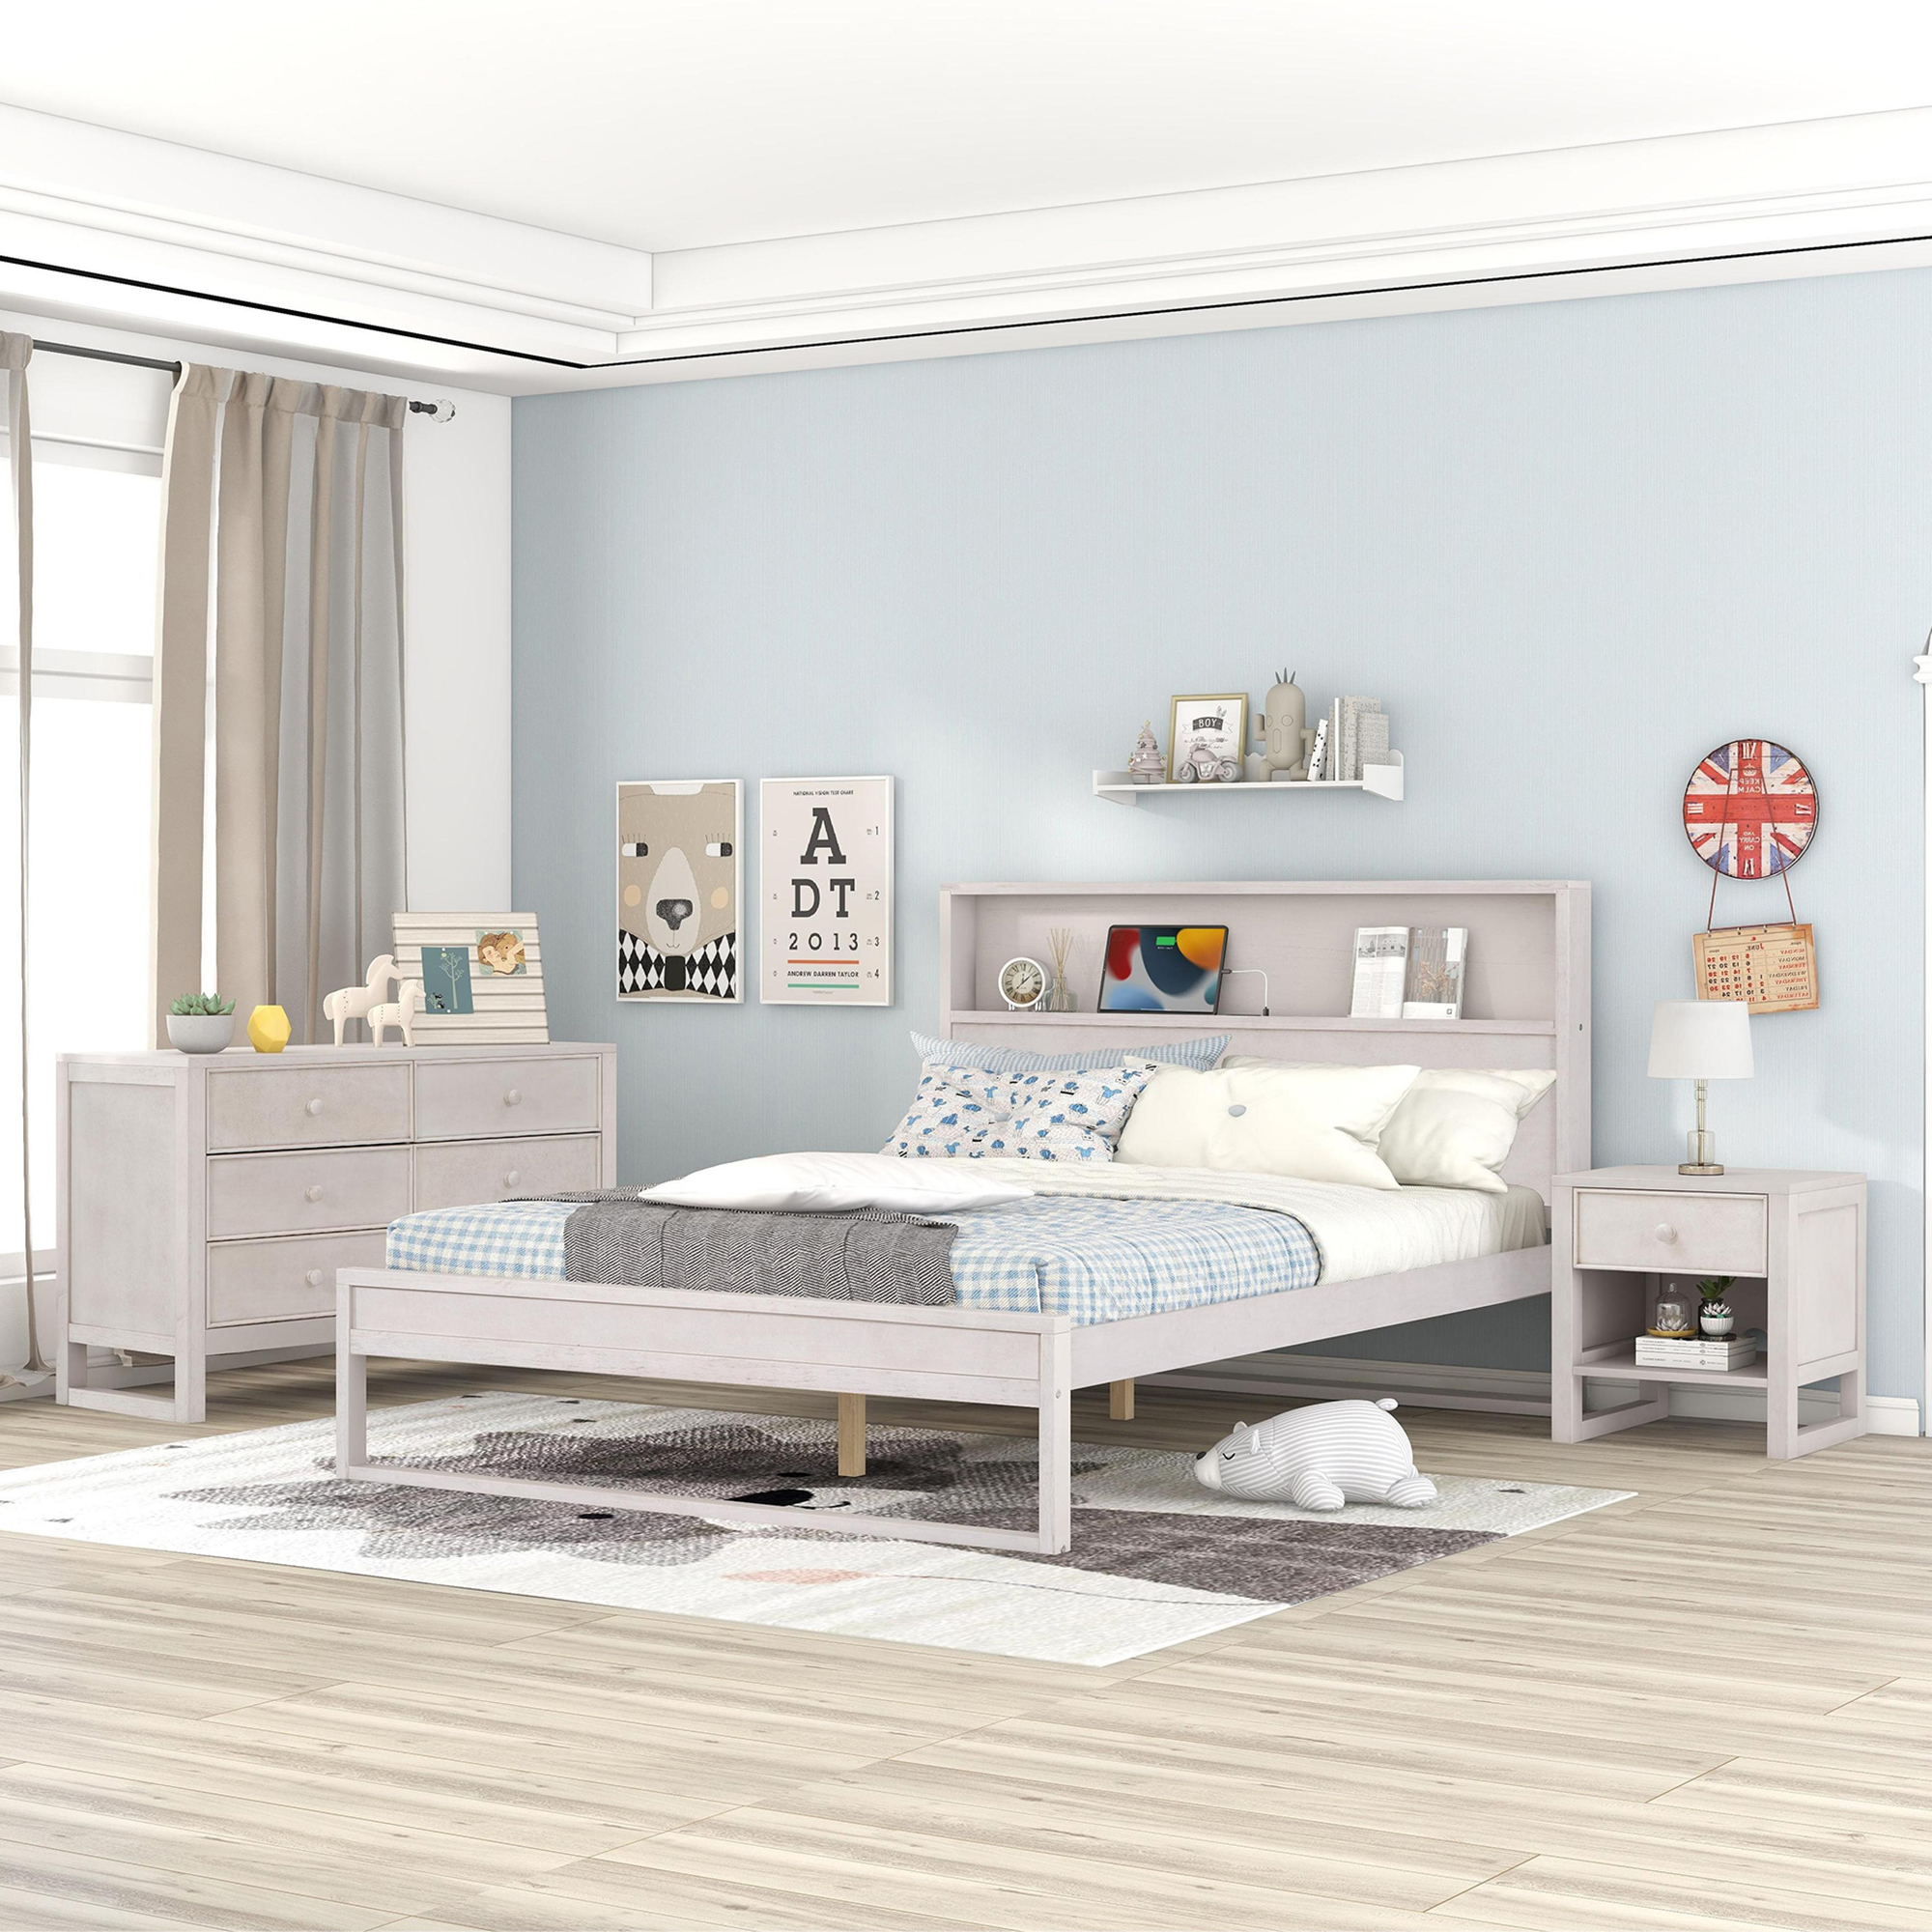 3-Pieces Bedroom Sets, Queen Size Platform Bed - HL000003AAW